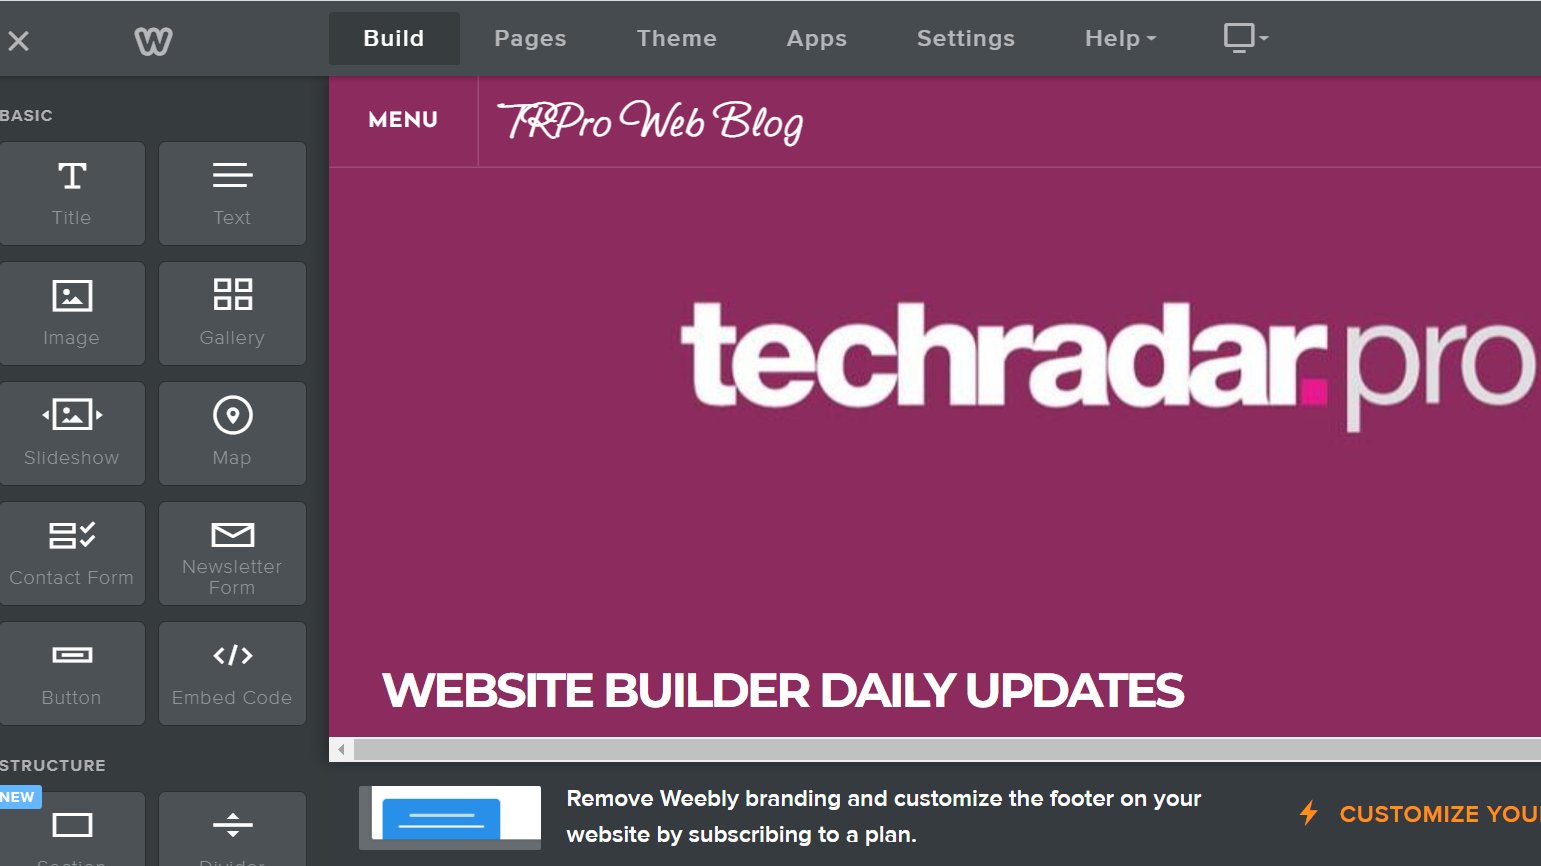 Скриншот блога TechRadar Pro, созданного с помощью конструктора веб-сайтов Weebly.